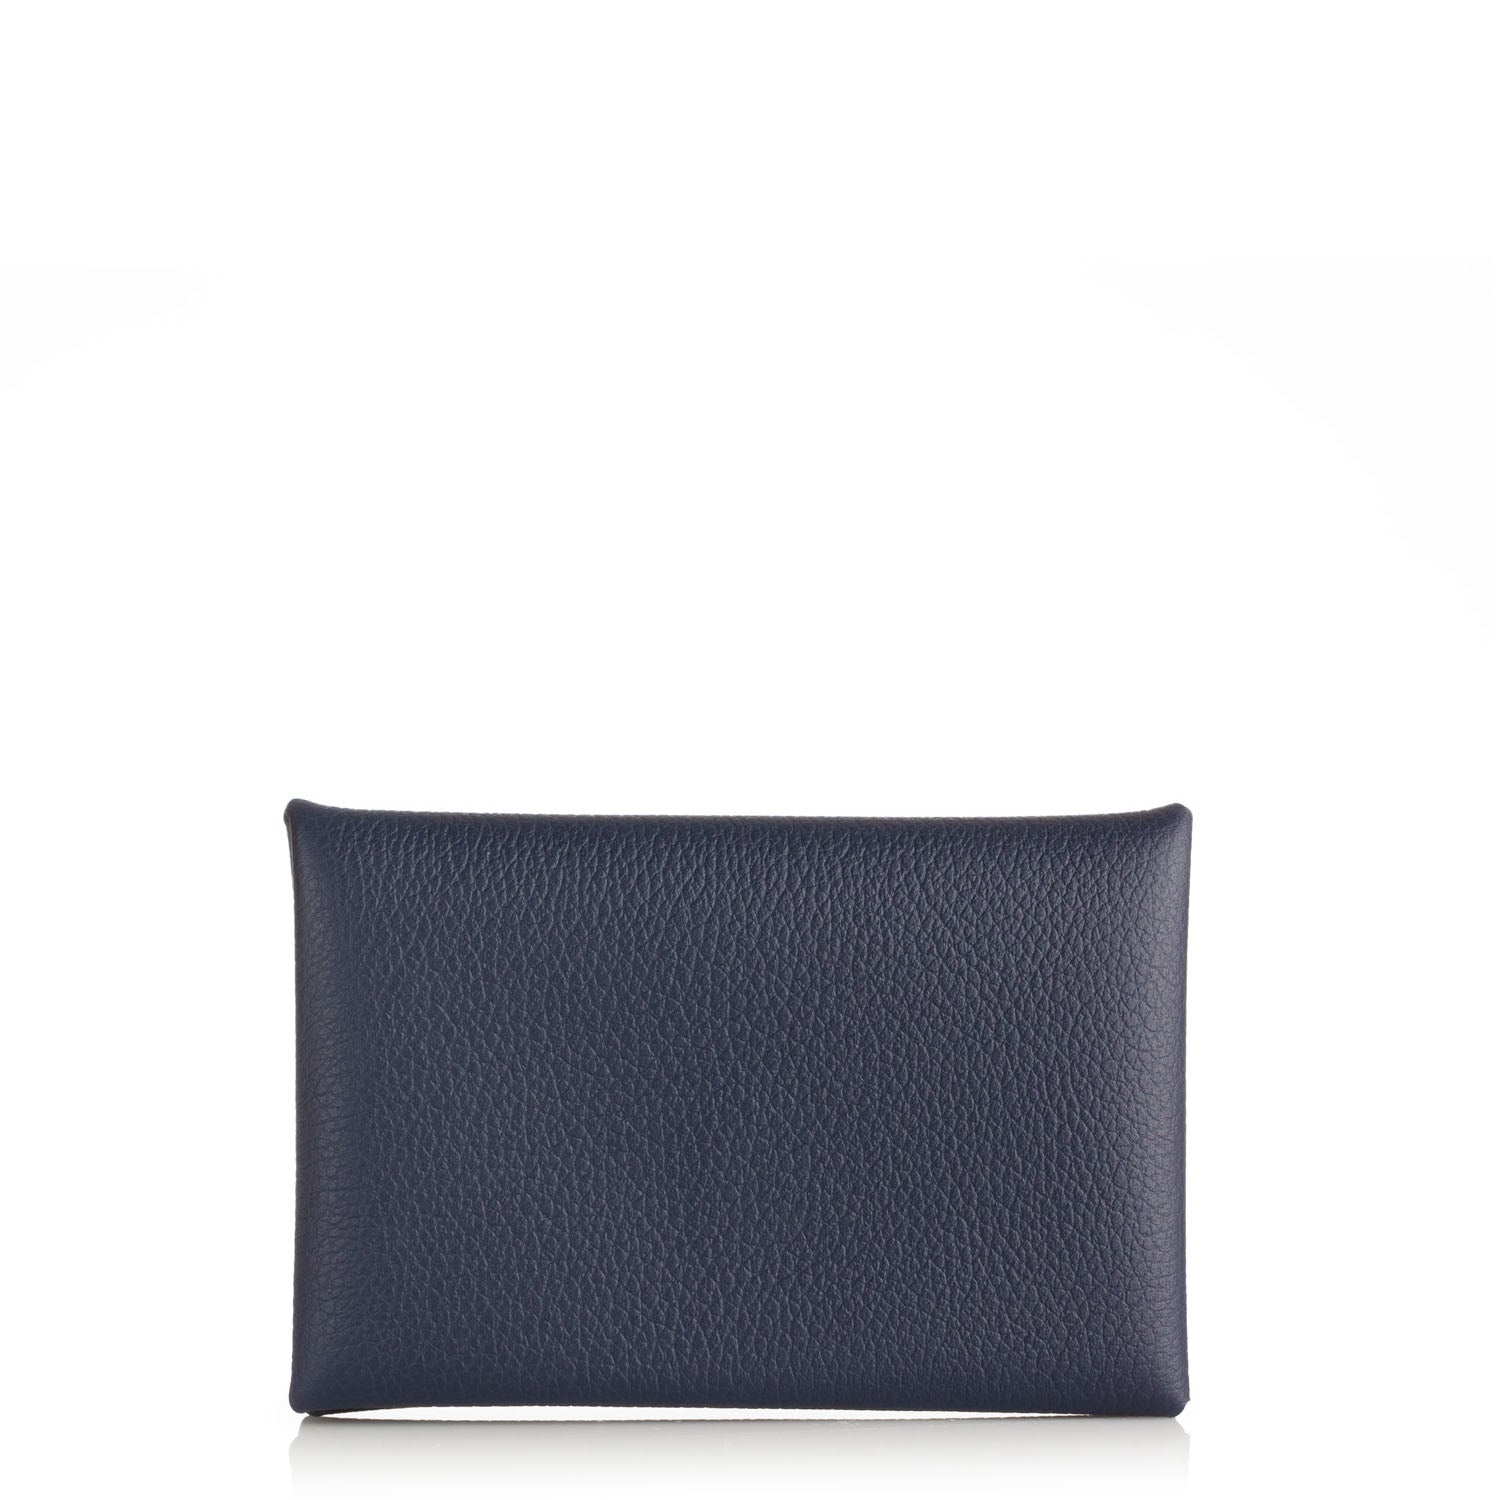 Hermes Calvi Card Holder in Bleu Nuit Evercolor Leather – Brands Lover